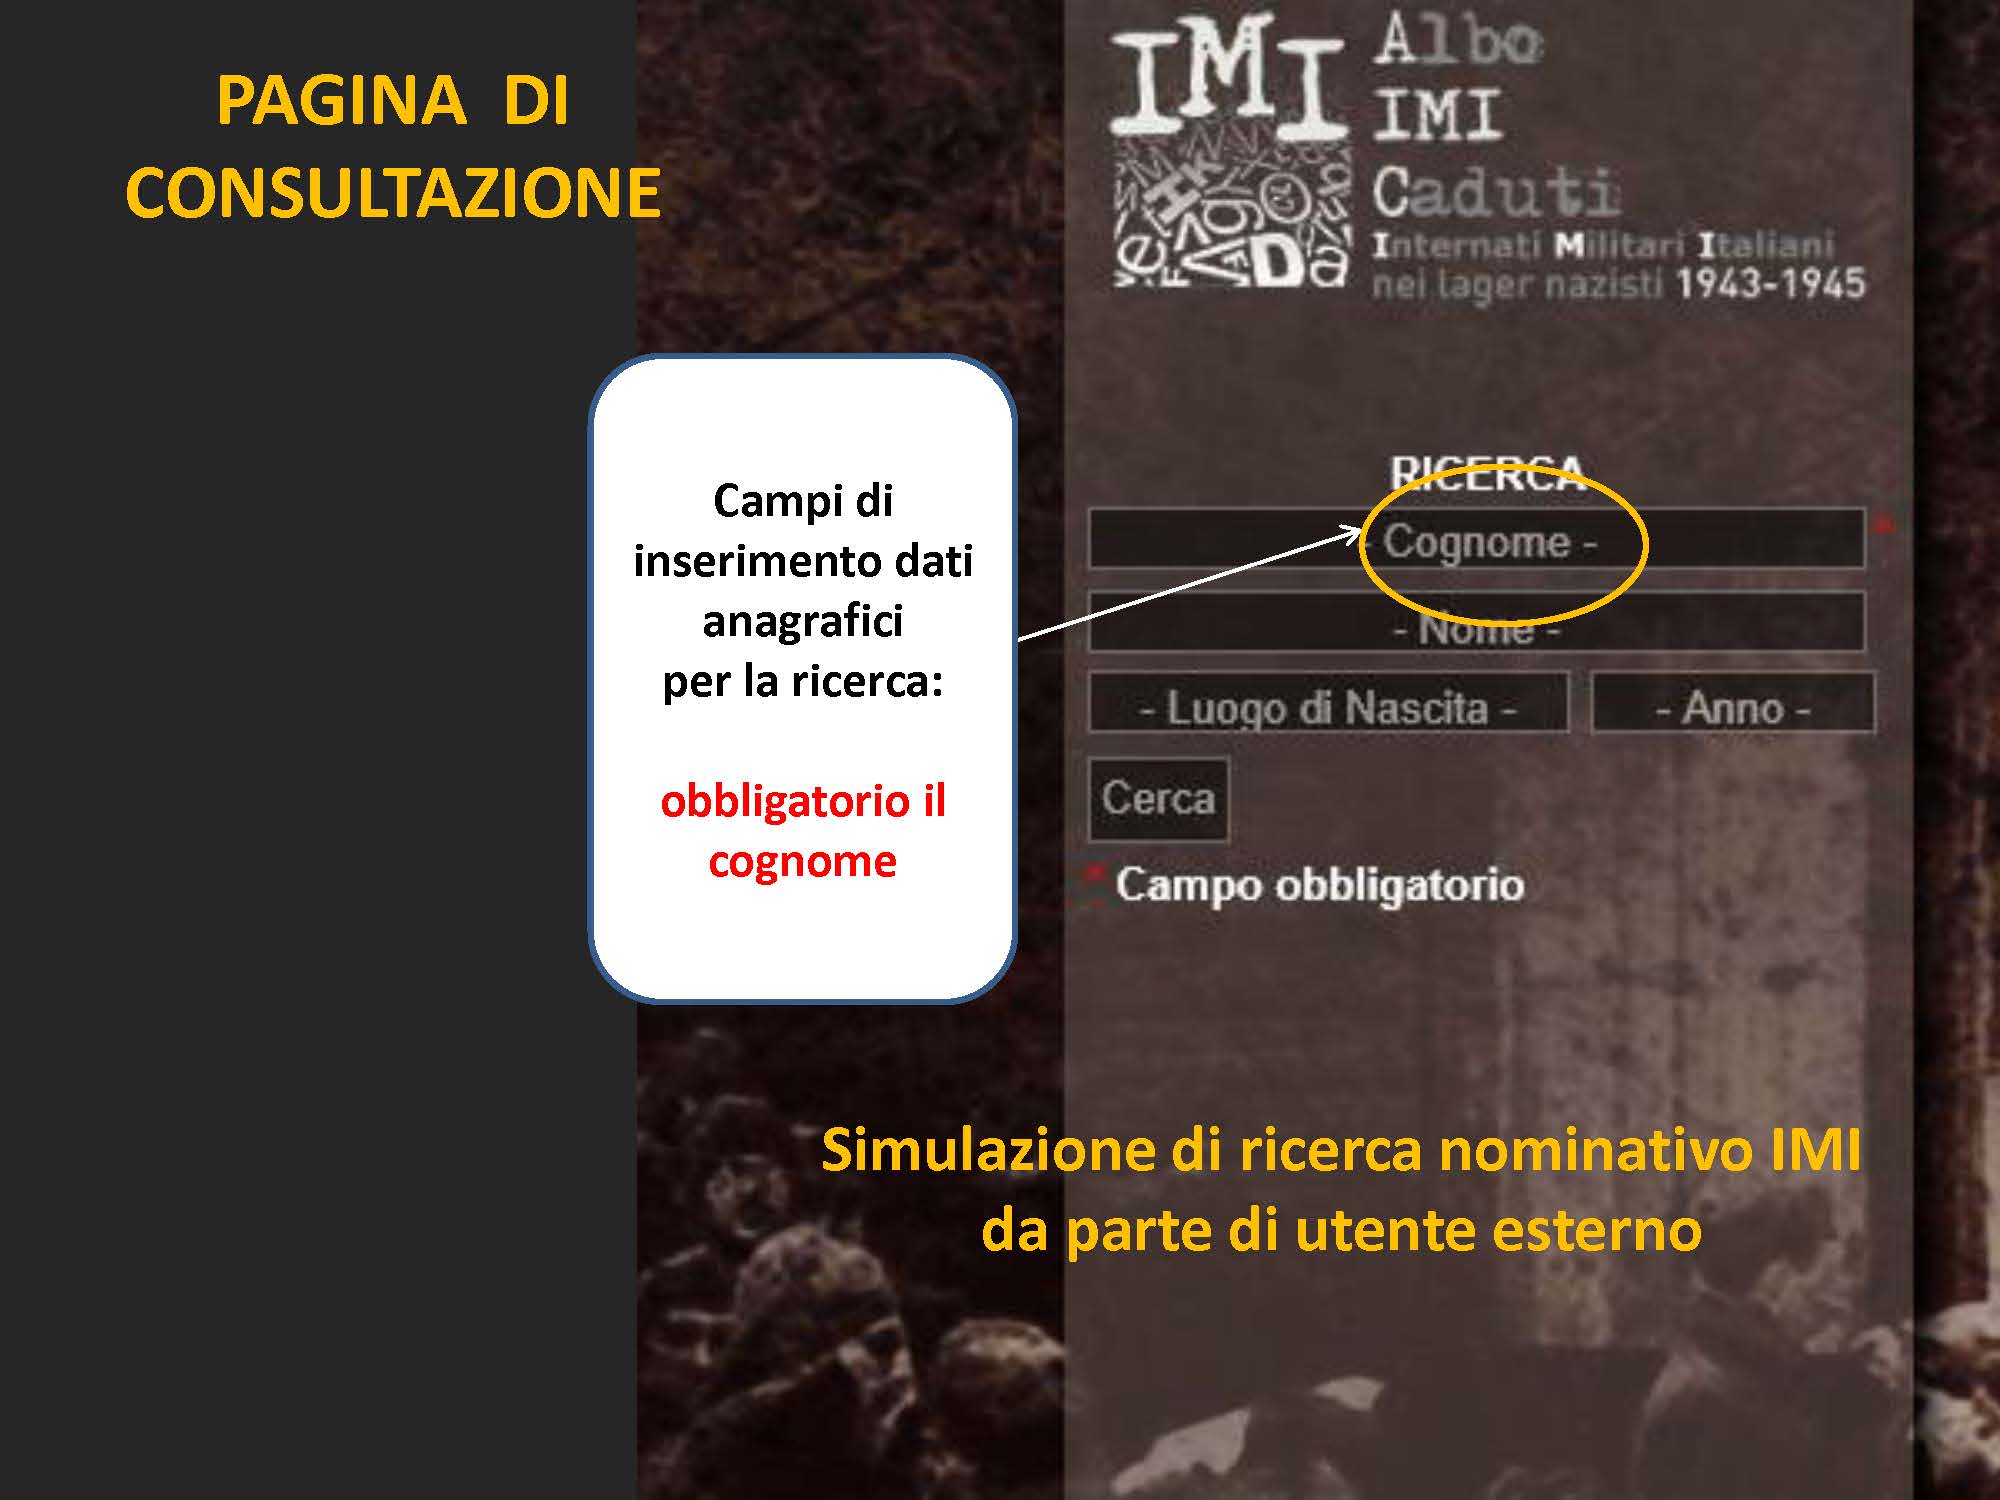 Le memorie degli IMI internati militari italiani_Pagina_057